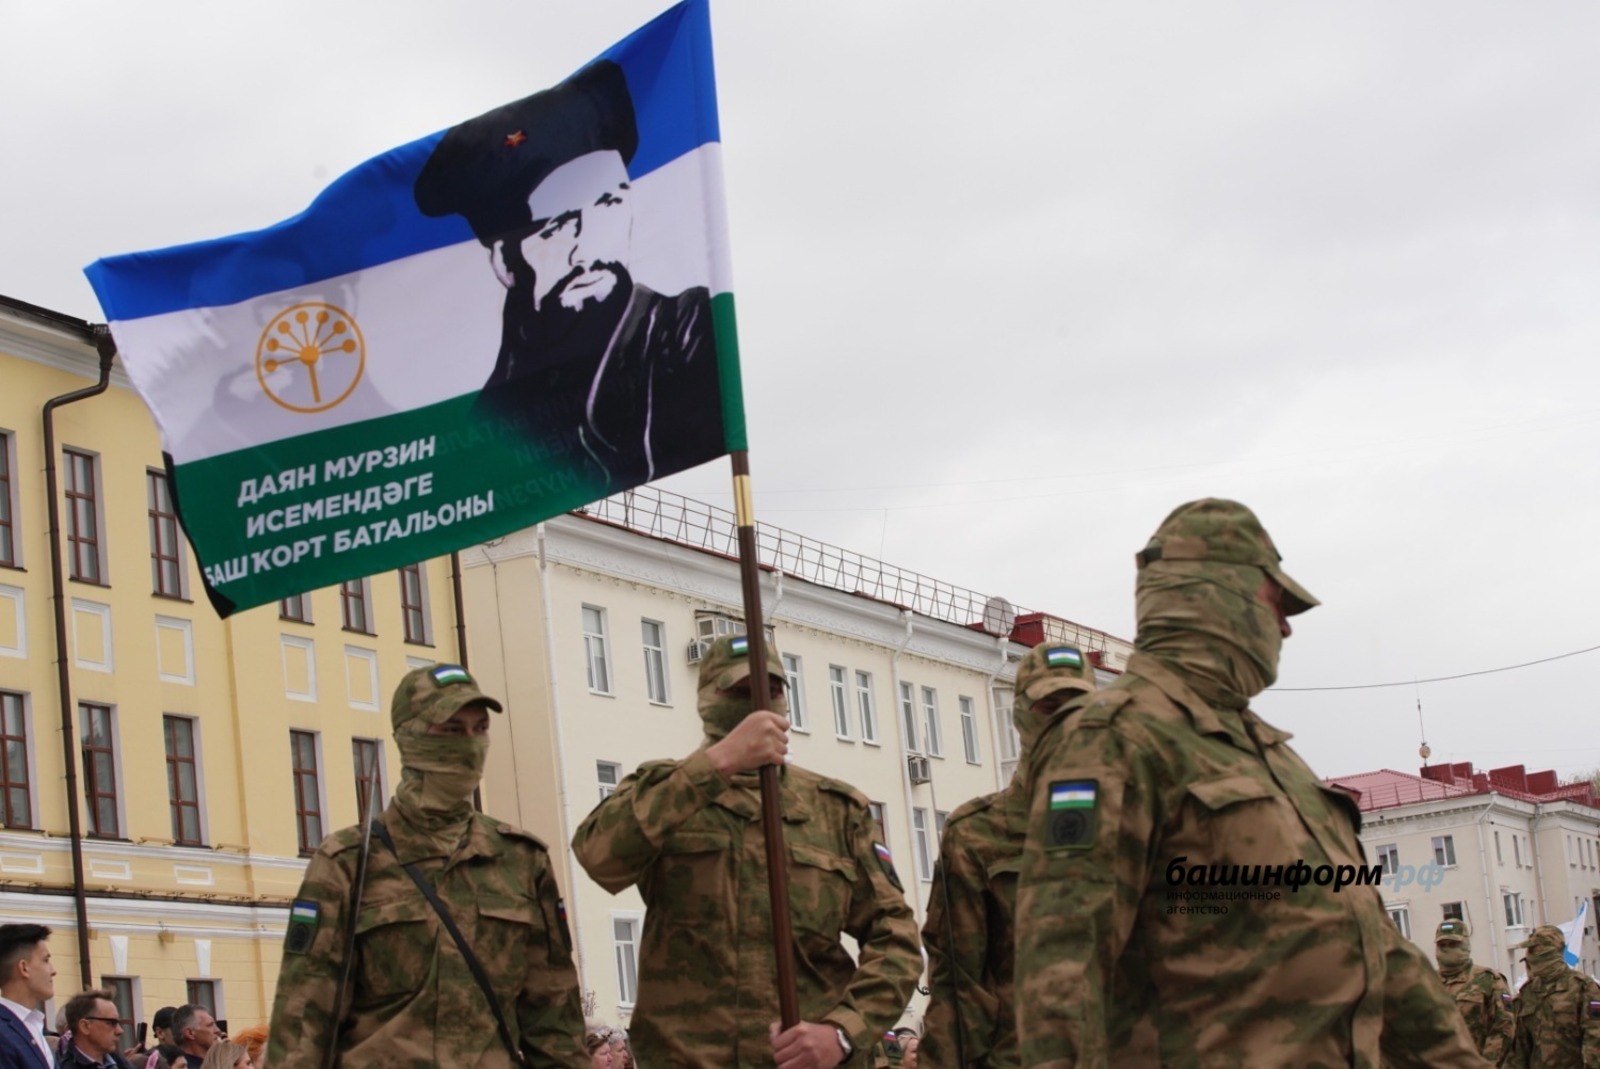 Башкирский батальон имени Даяна Мурзина отправился на боевое слаживание